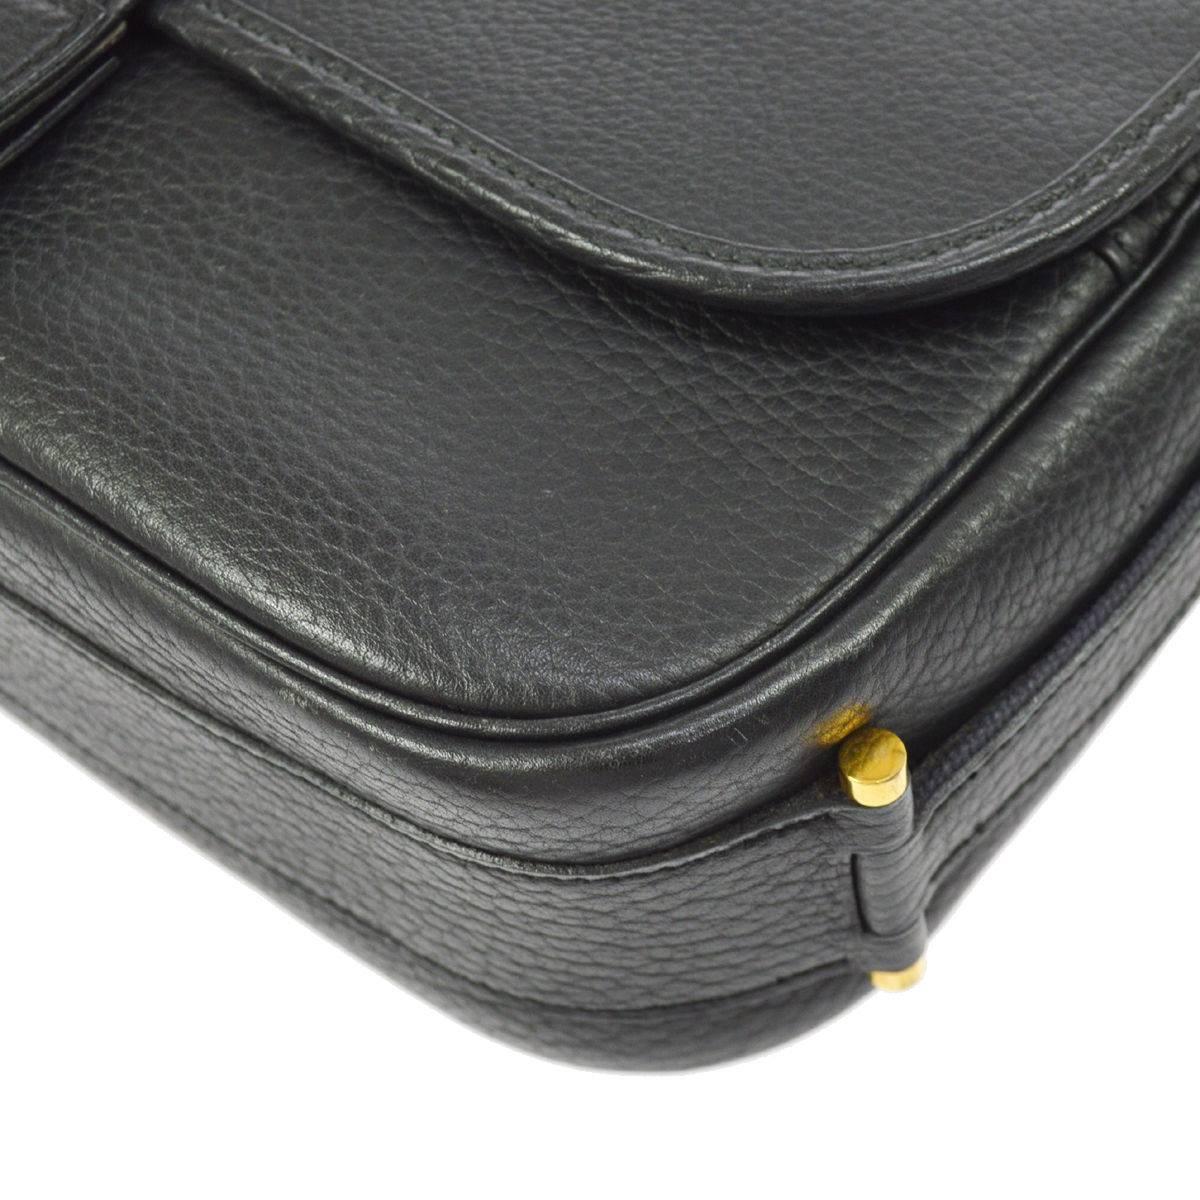 Hermes Black Leather Gold Hardware Saddle Carryall Flap Shoulder Bag 2